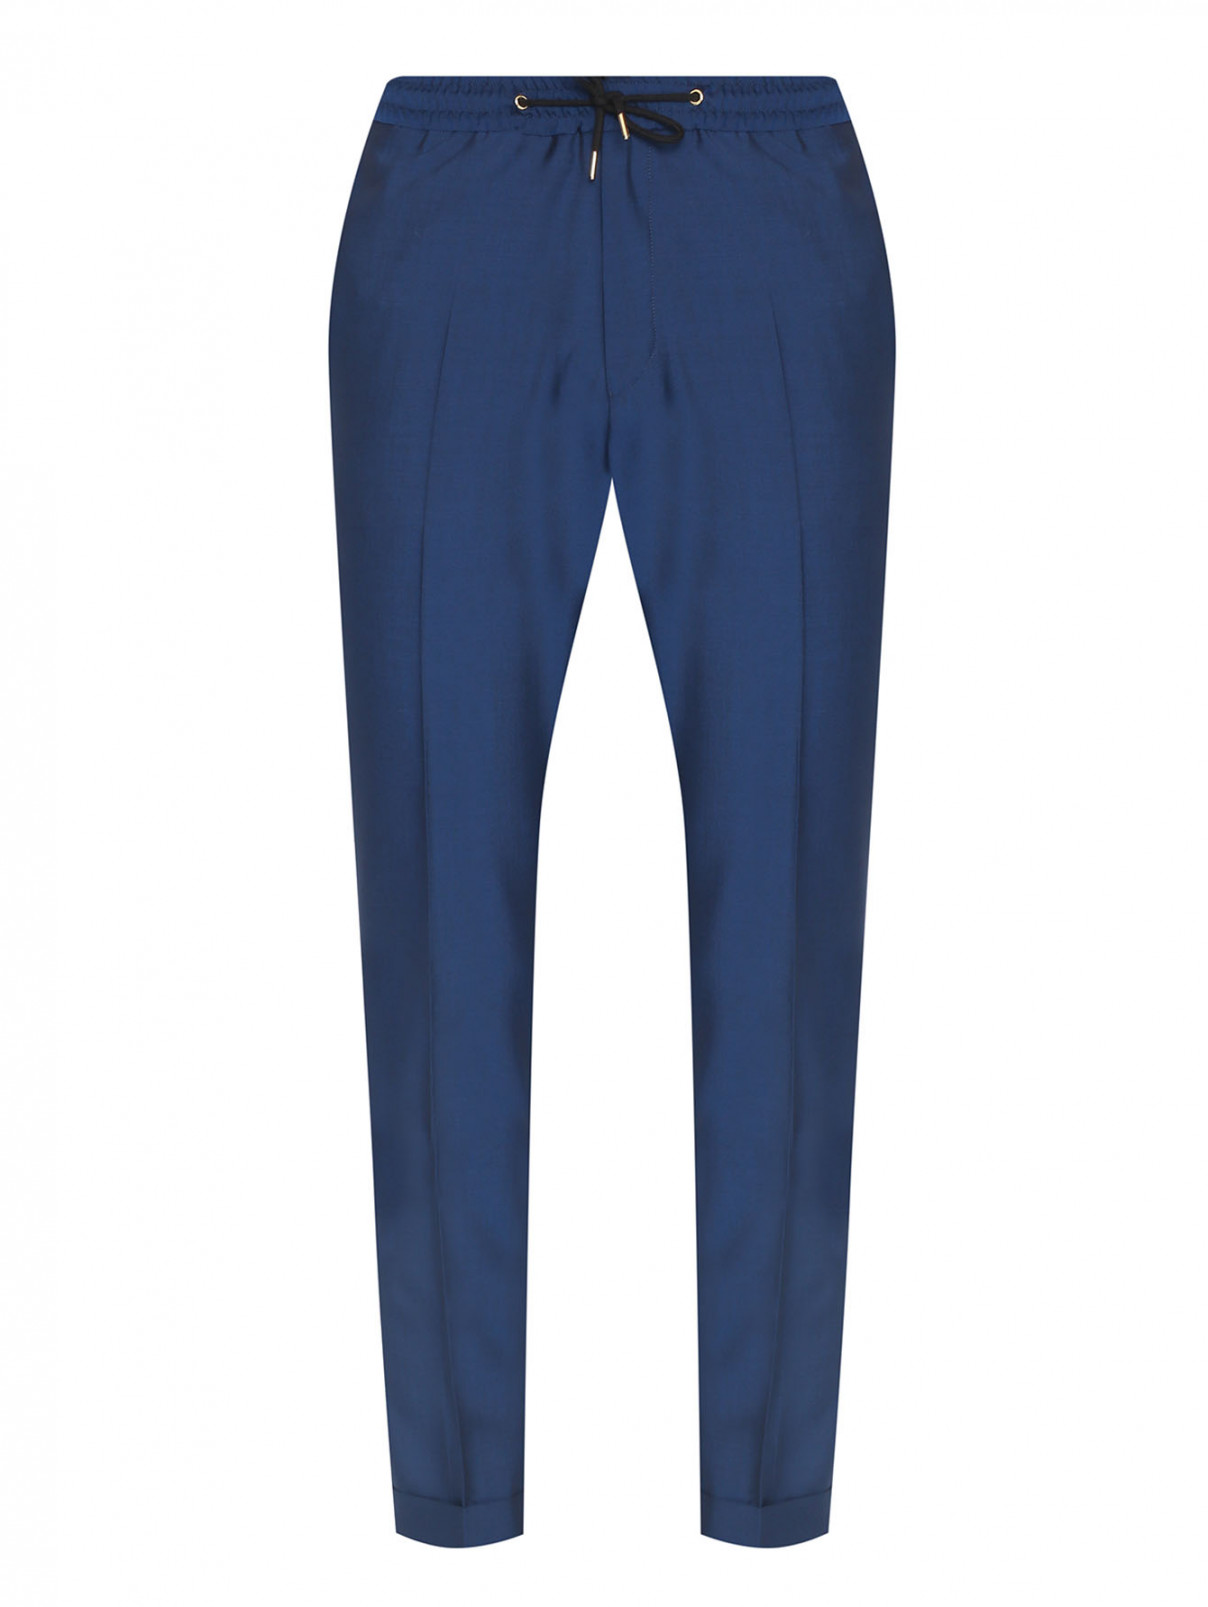 Однотонные брюки из шерсти и мохера на резинке Paul Smith  –  Общий вид  – Цвет:  Синий